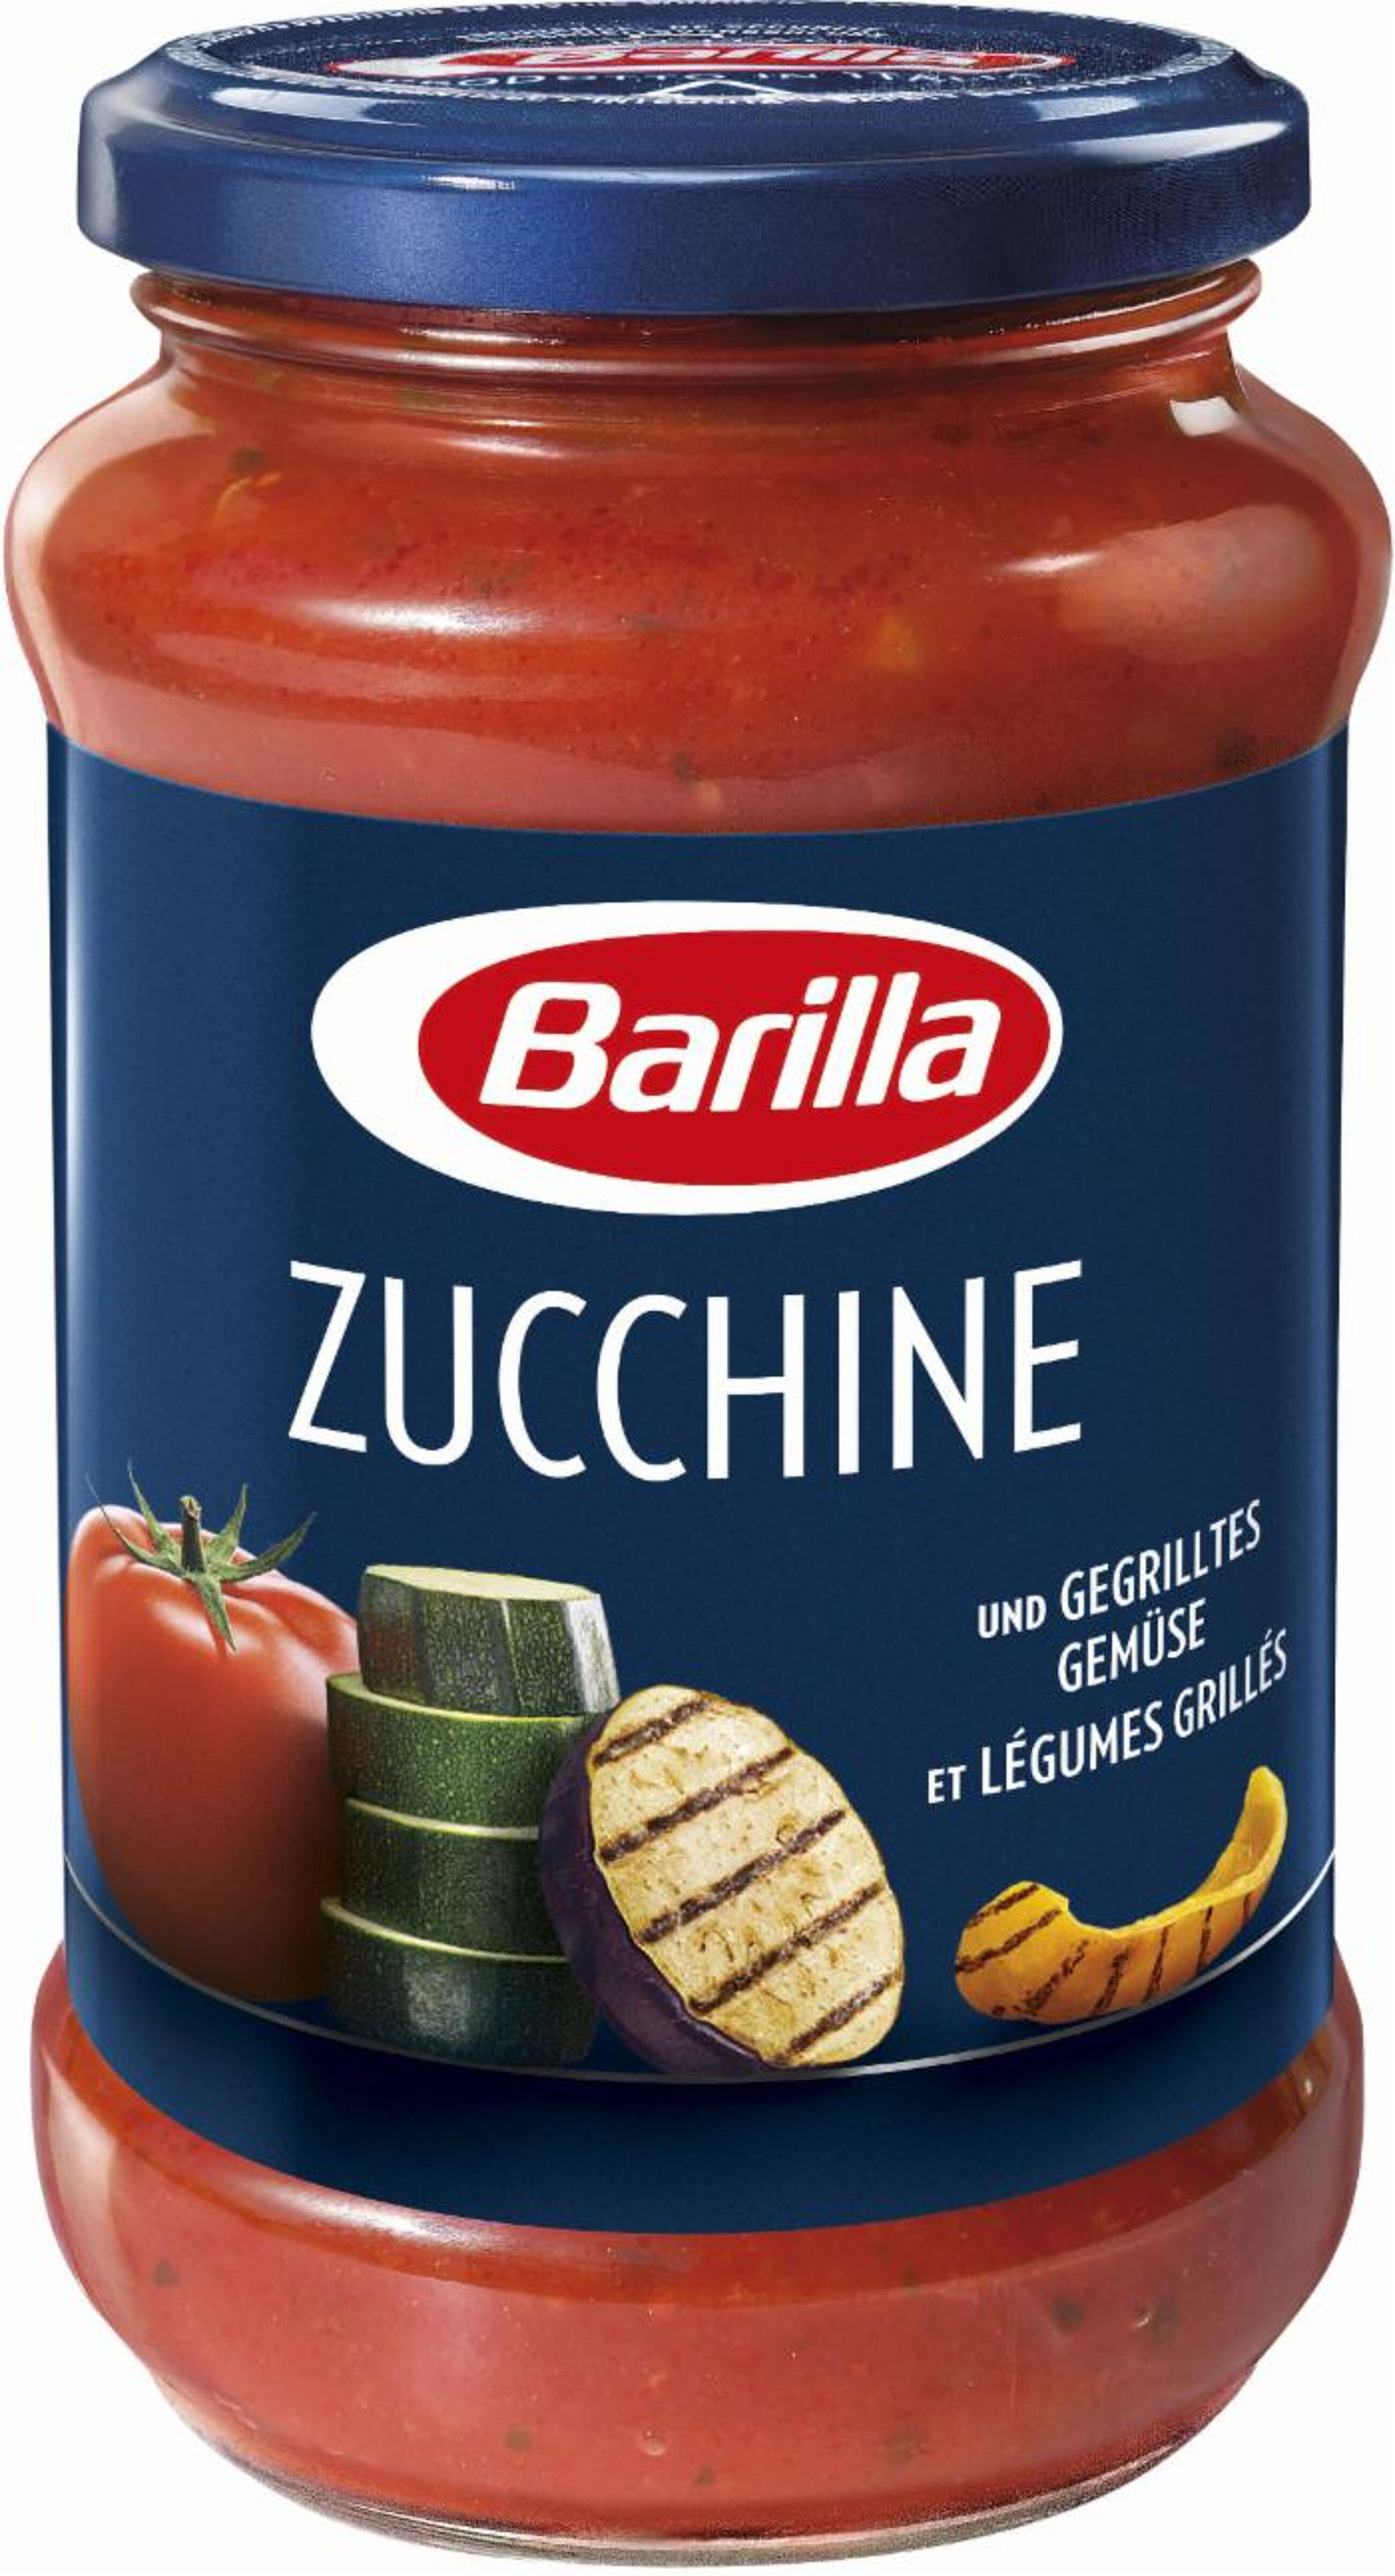 Zucchine et légumes grillés - Produit